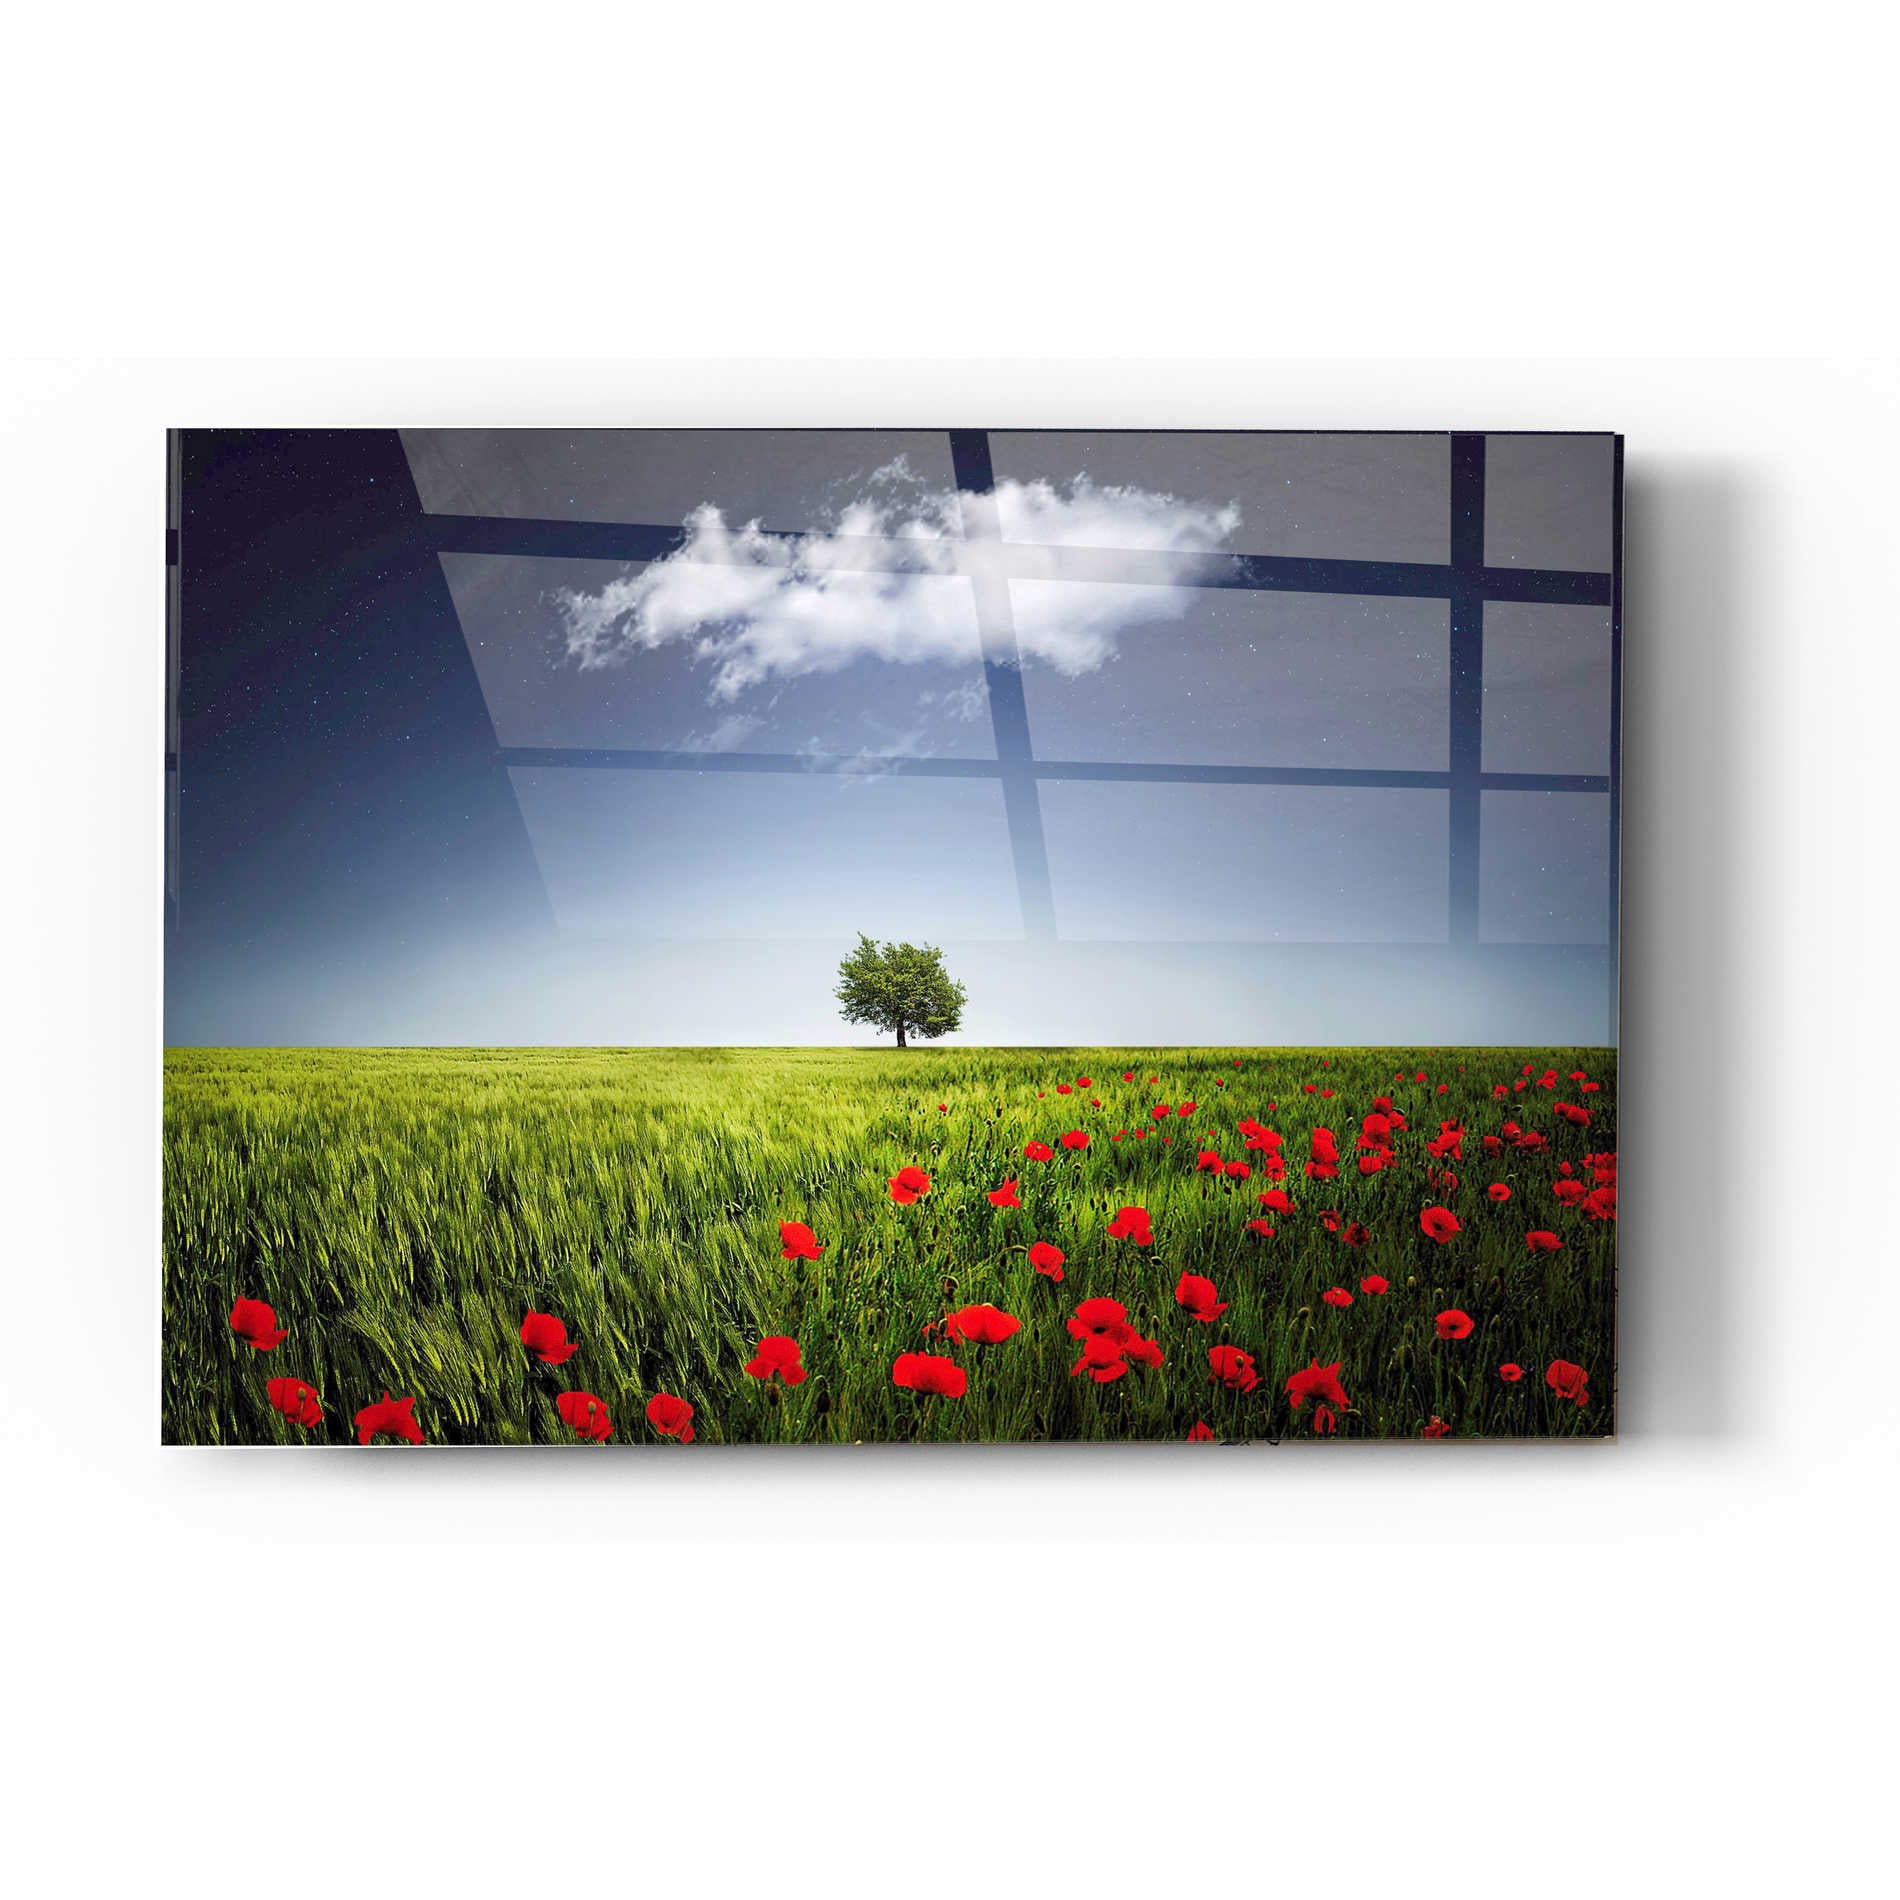 Epic Art "Lone Tree in a Poppy Field" Acrylic Glass Wall Art,24x36